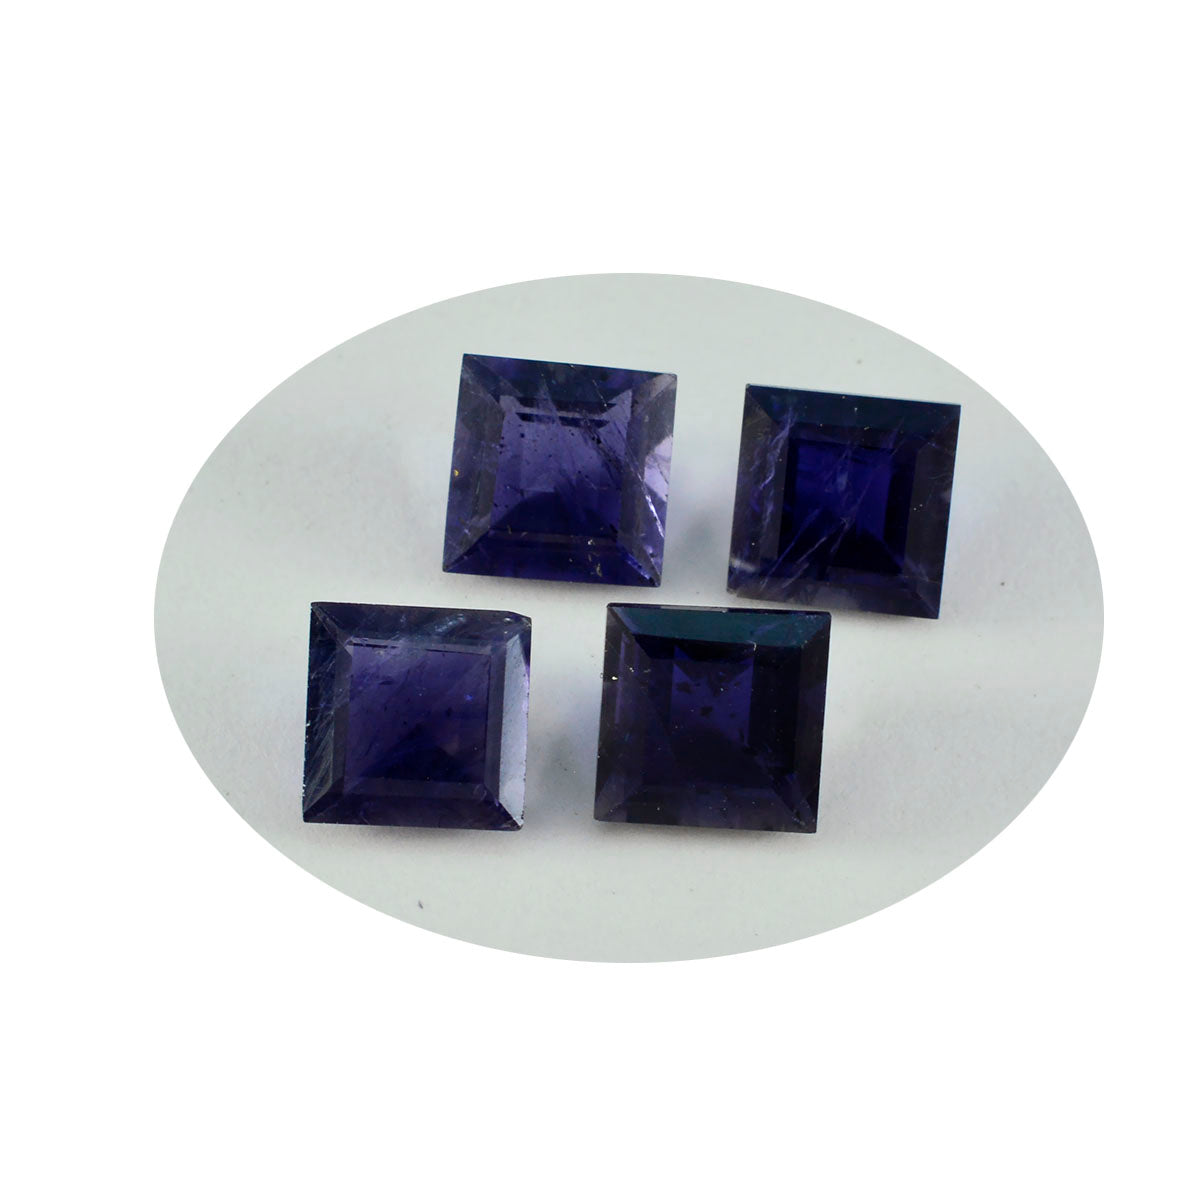 Riyogems 1PC blauwe ioliet gefacetteerde 15x15 mm vierkante vorm mooie kwaliteitsedelsteen